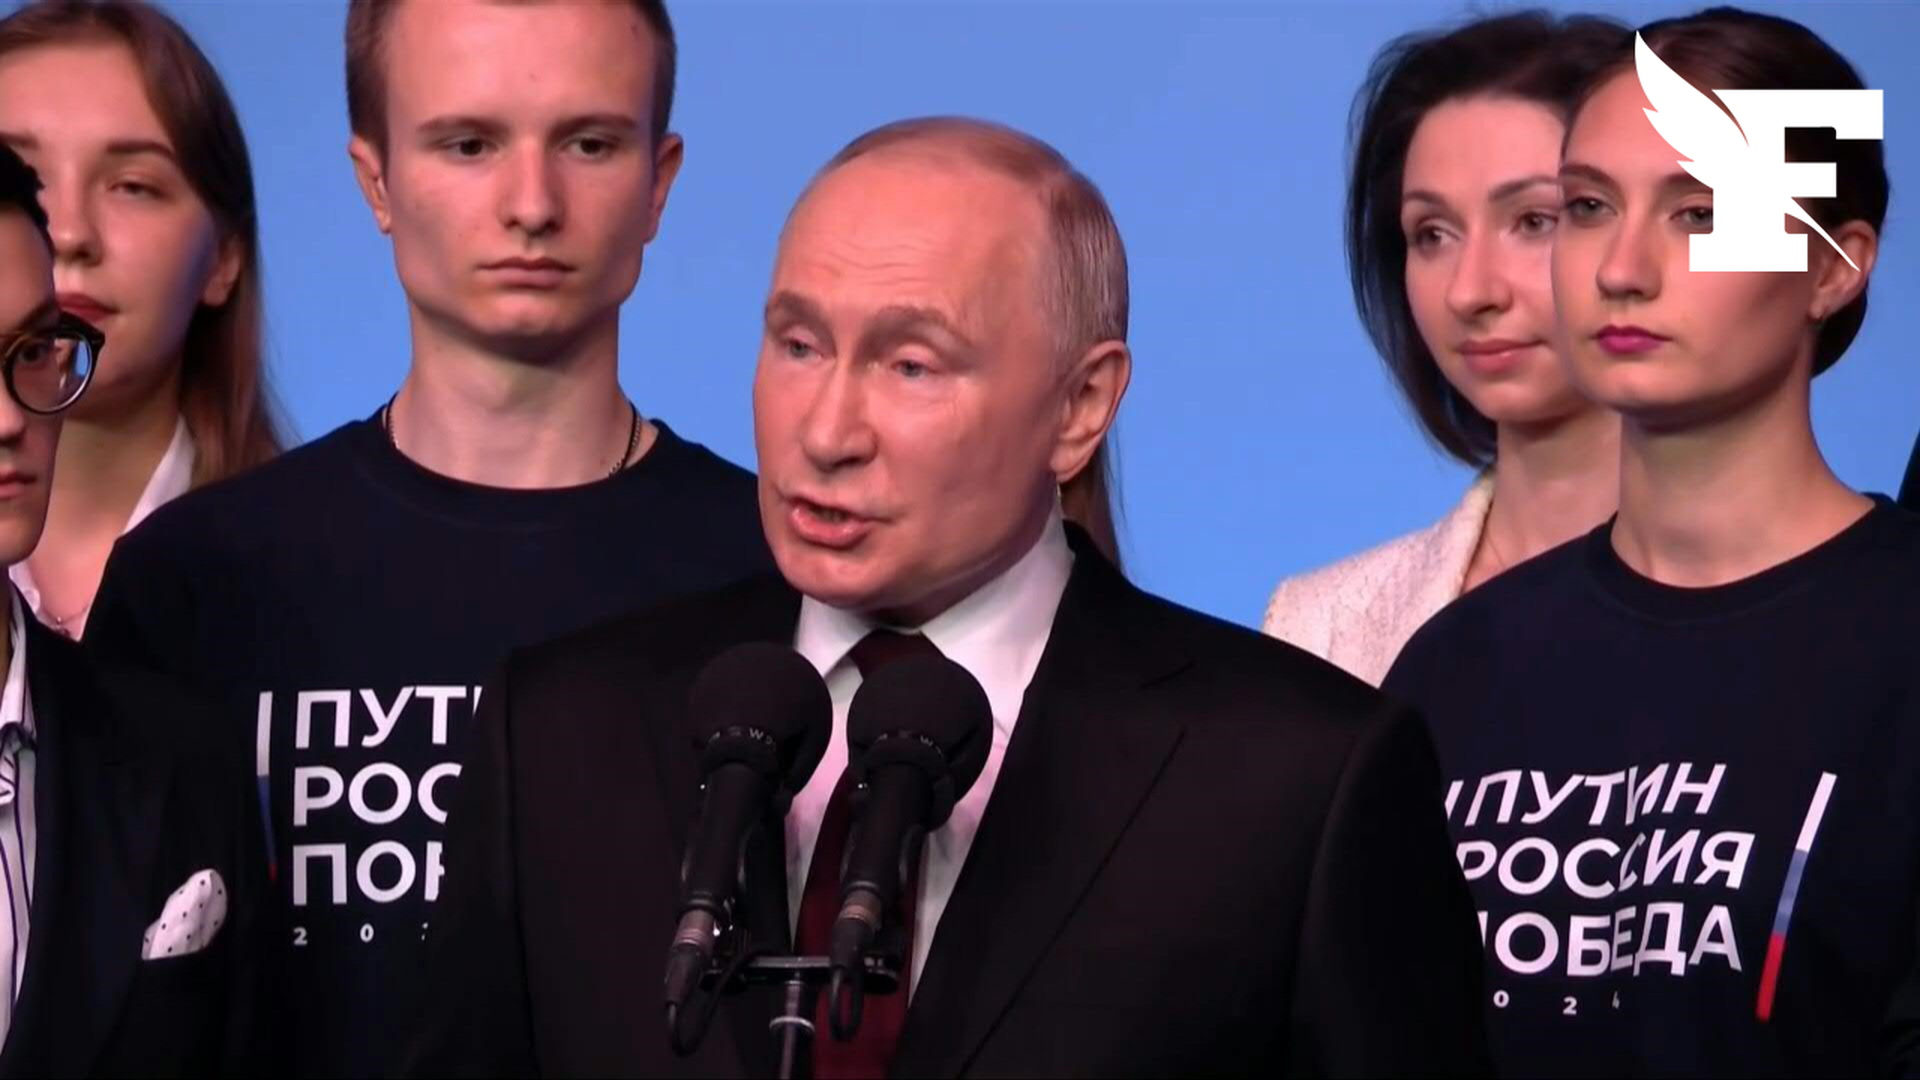 Triomphe écorné, élection farfelue, farce : la presse occidentale raille la réélection de Vladimir Poutine